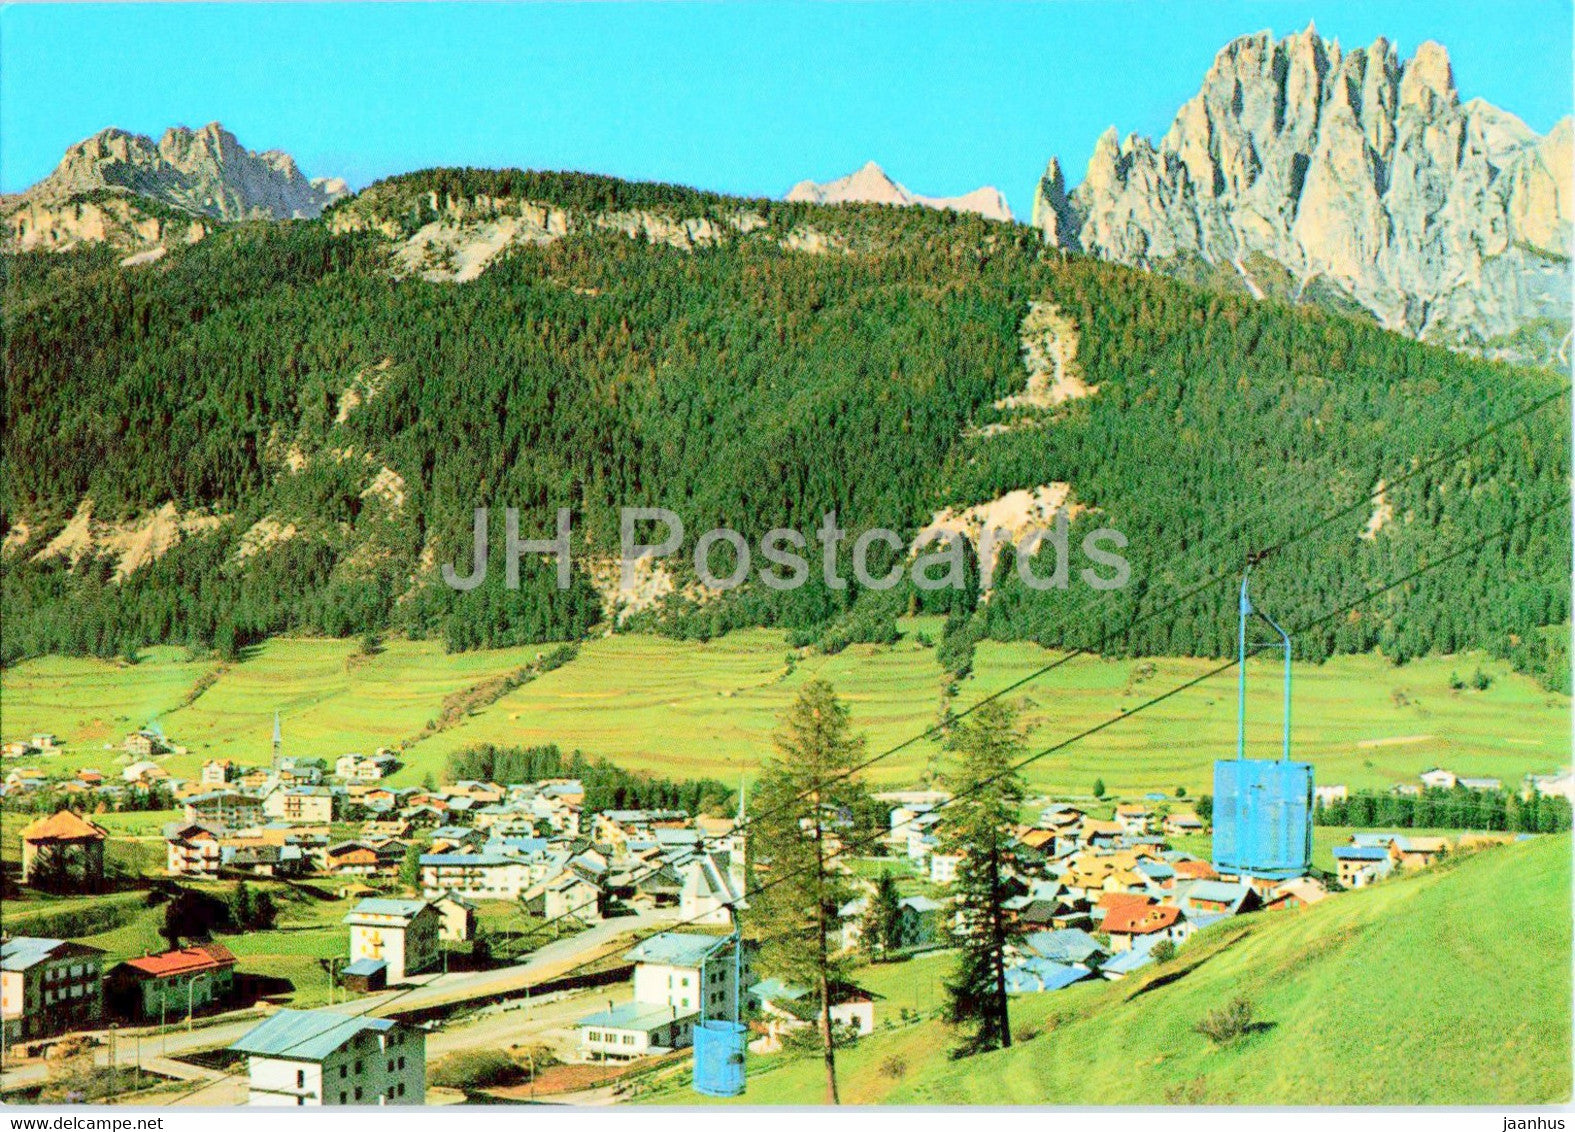 Val di Fassa - Pozza e Meida - Panorama - 0160 - Italy - unused - JH Postcards